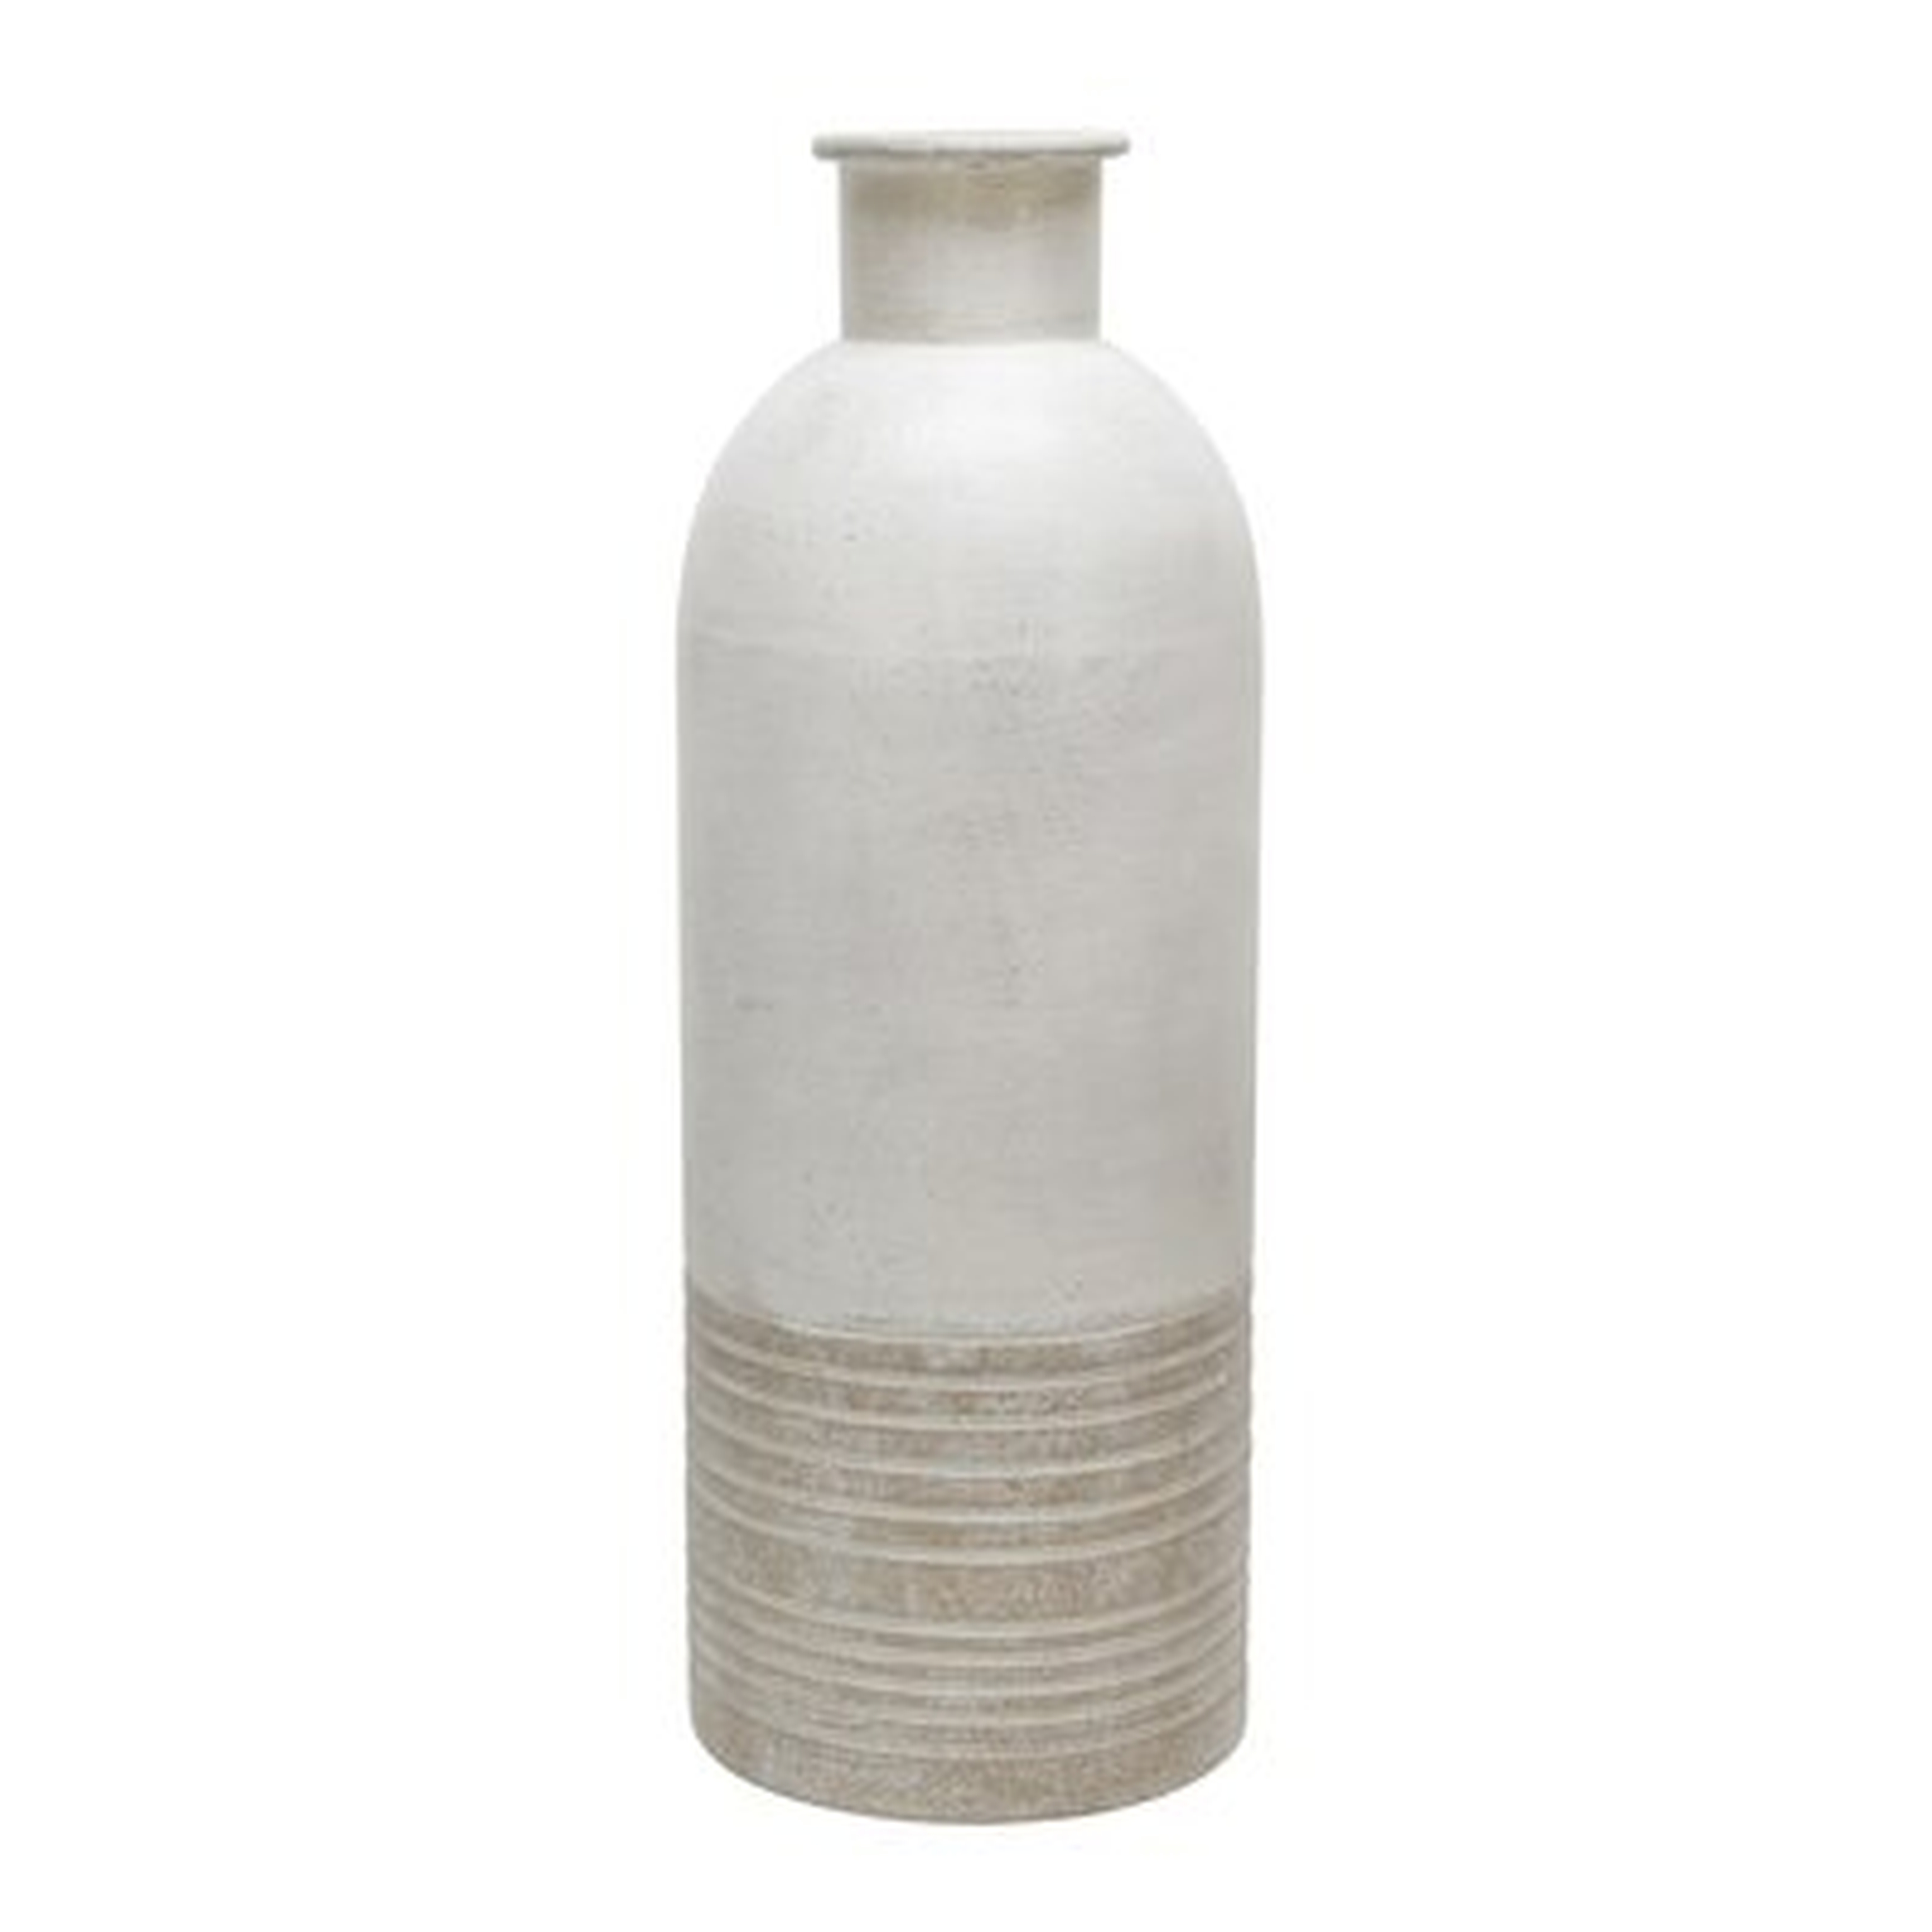 Ivory/Beige Metal Table Vase (In Stock May 2021) - Wayfair